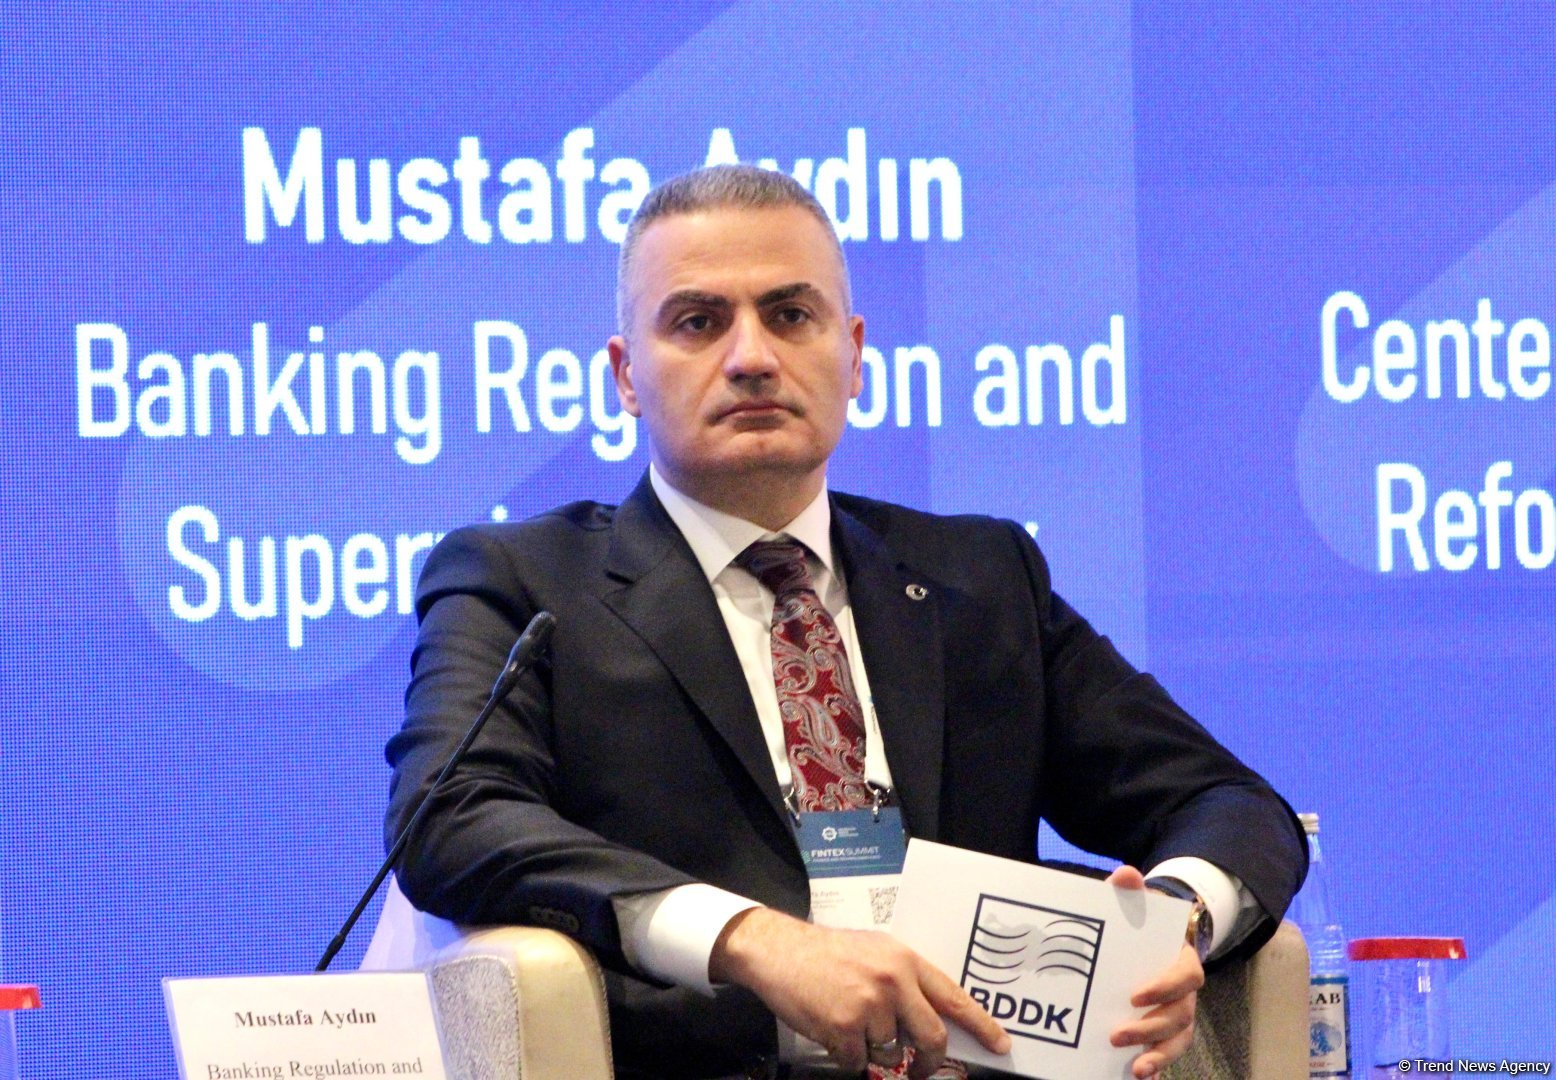 Maliyyə sektoru texnoloji yenilikləri sürətlə mənimsəyir - Mustafa Aydın